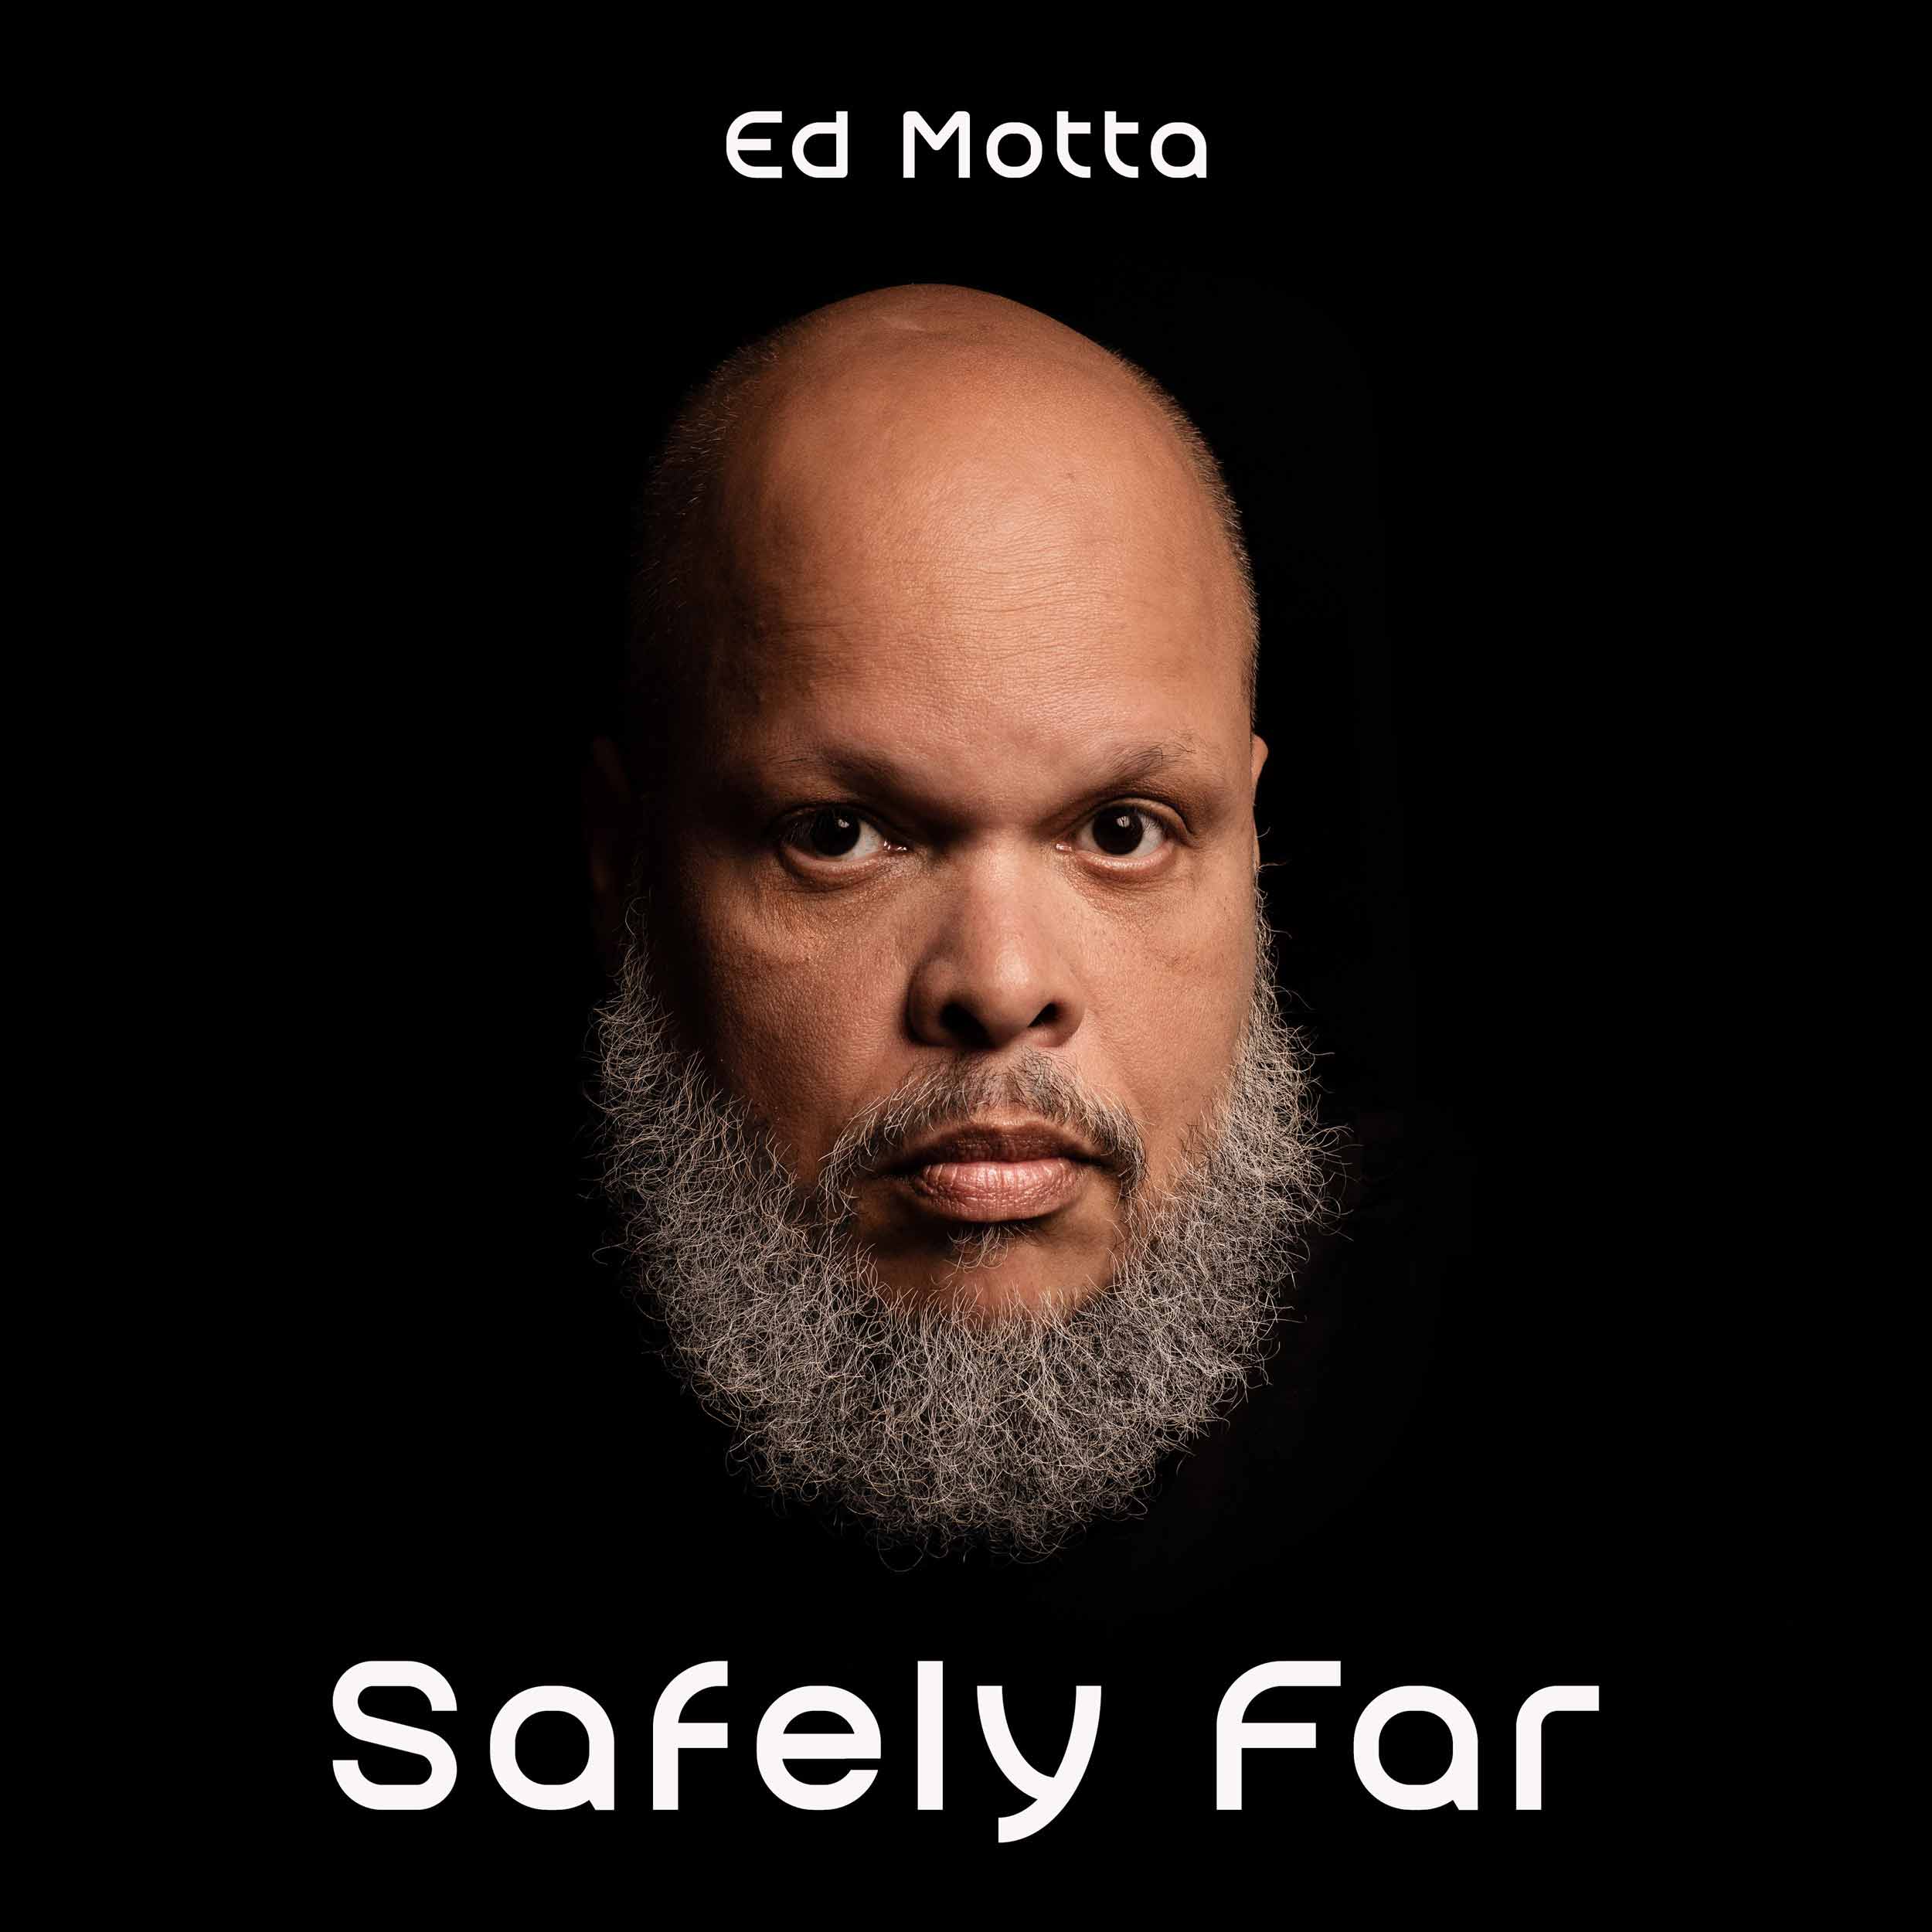 ED MOTTA「Safely Far」